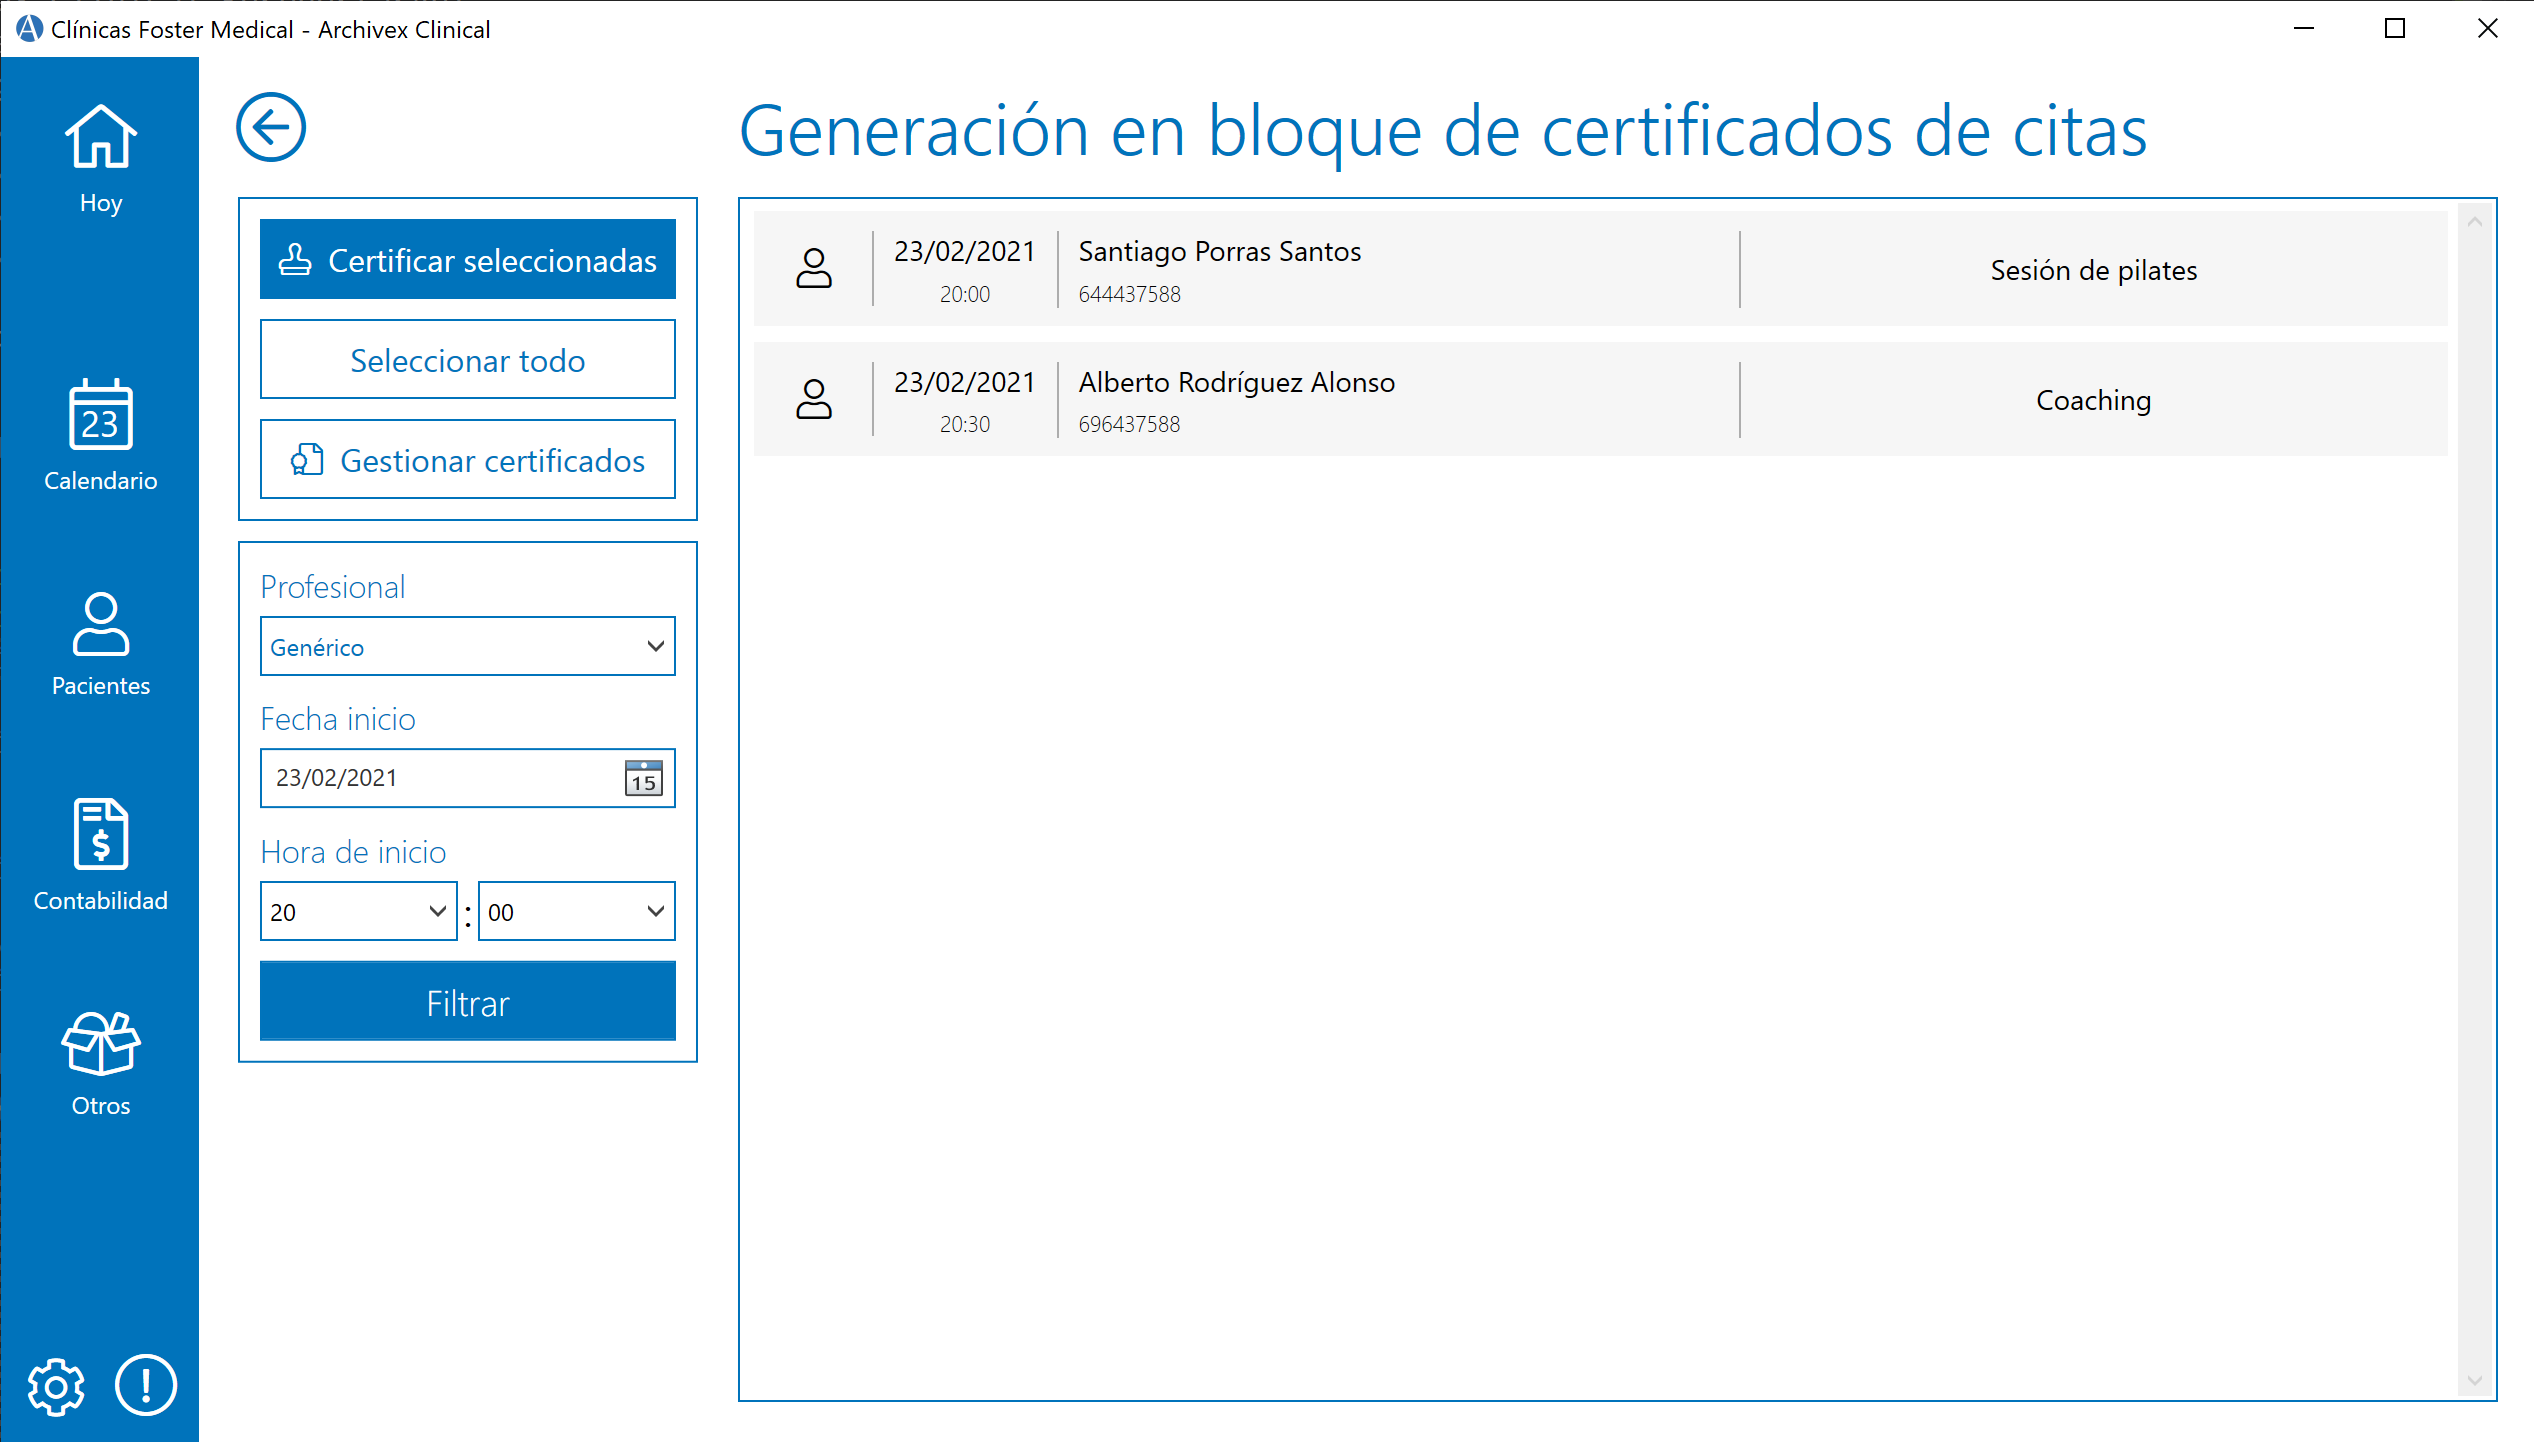 Generación en bloque de certificados en Archivex Clinical